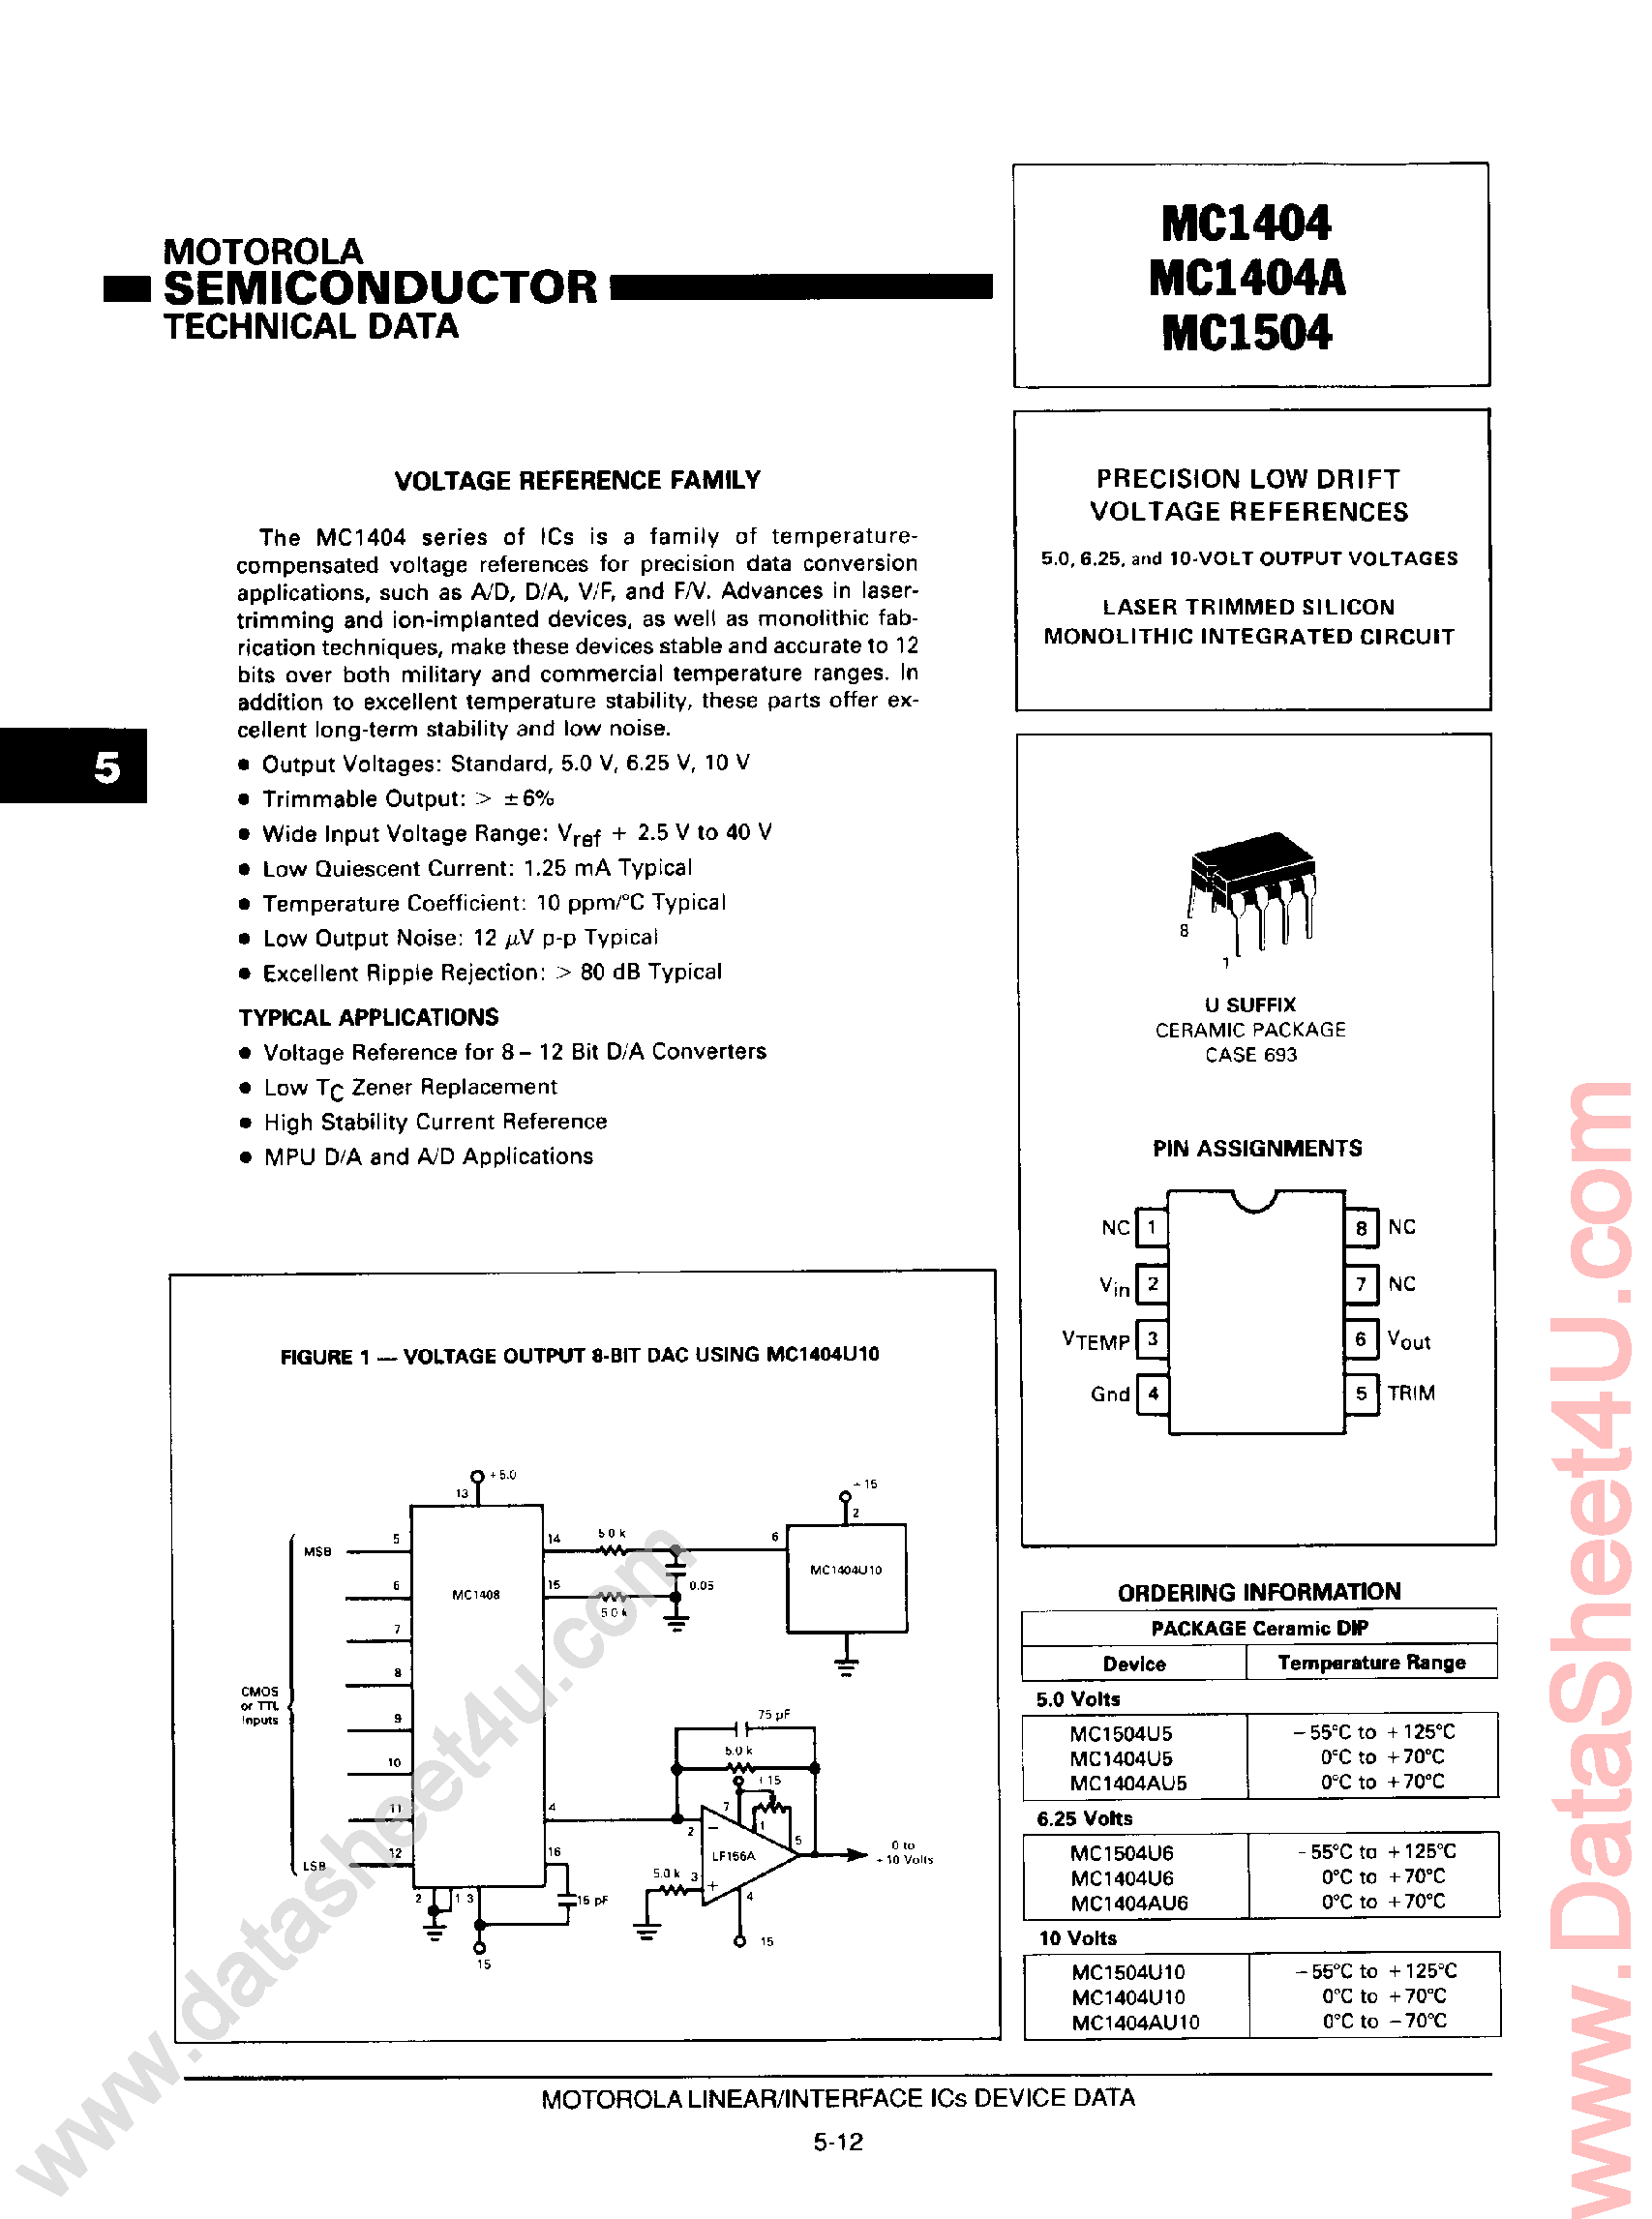 Даташит MC1404 - (MC1504 / MC1404) Voltage Reference Family страница 1